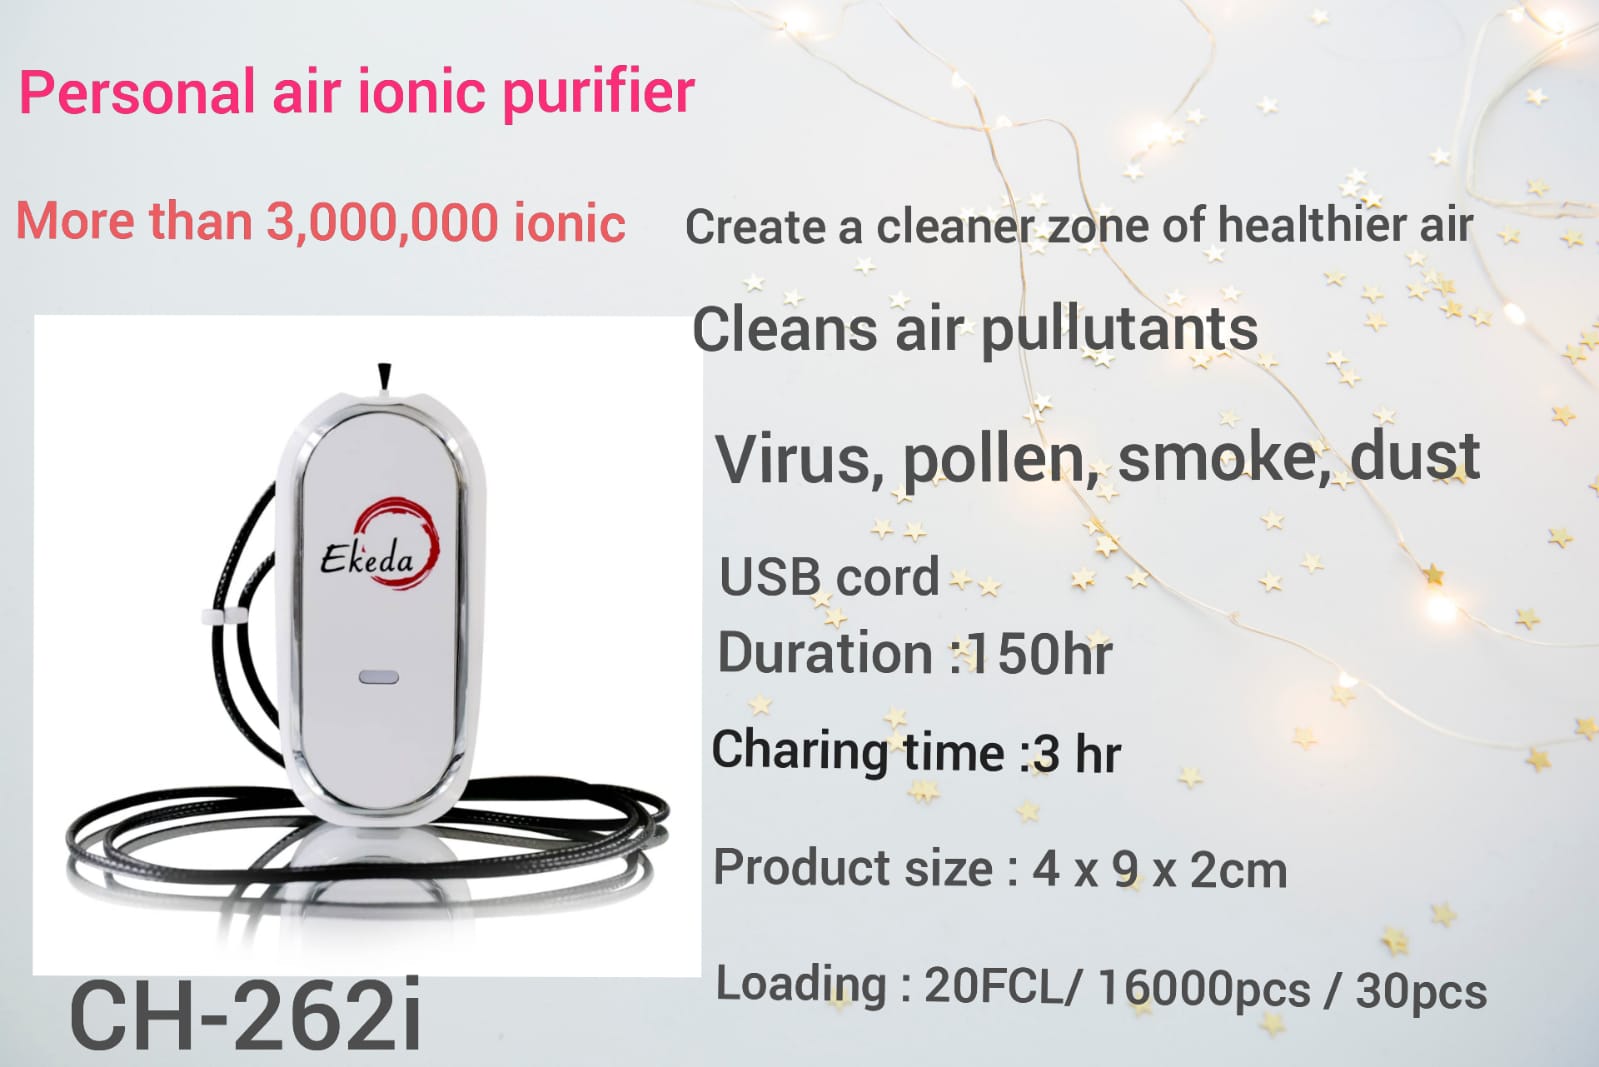 Personal air purifier